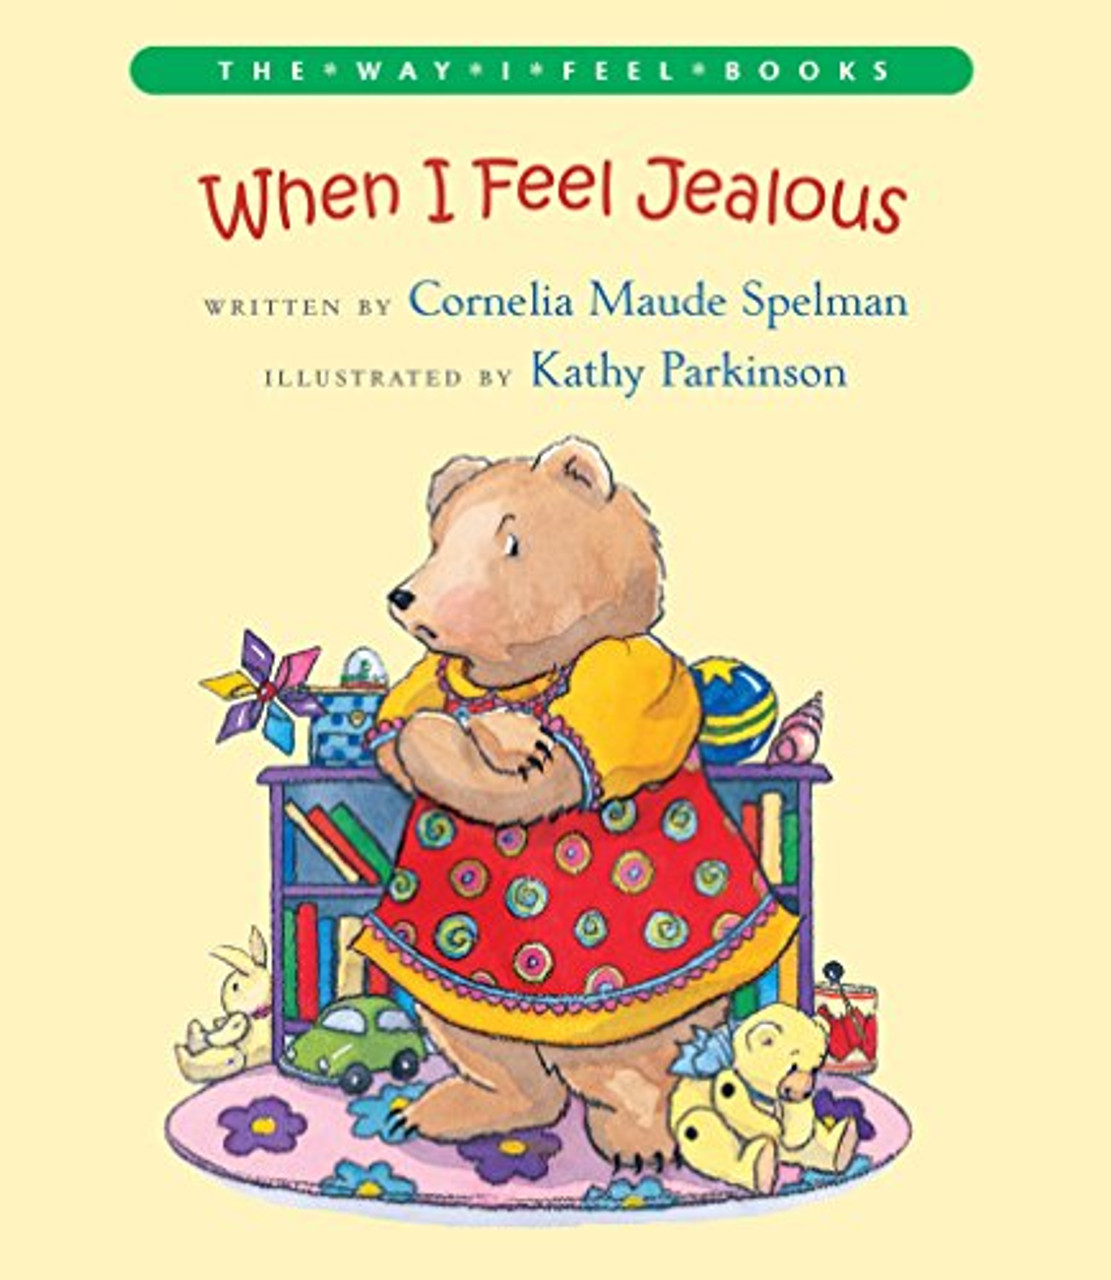 When I Feel Jealous by Cornelia Maude Spelman